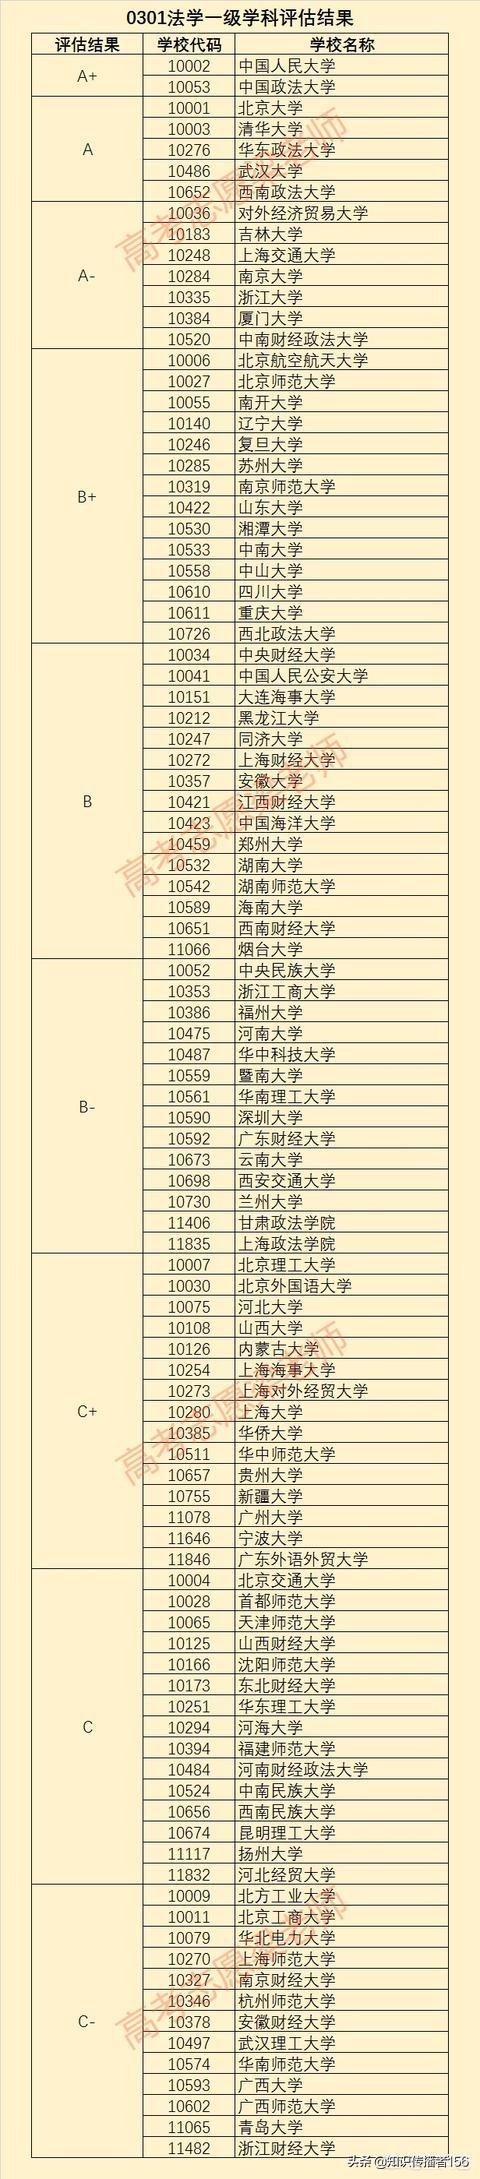 中国法学专业大学排名,全国法学专业高校排名 第1张